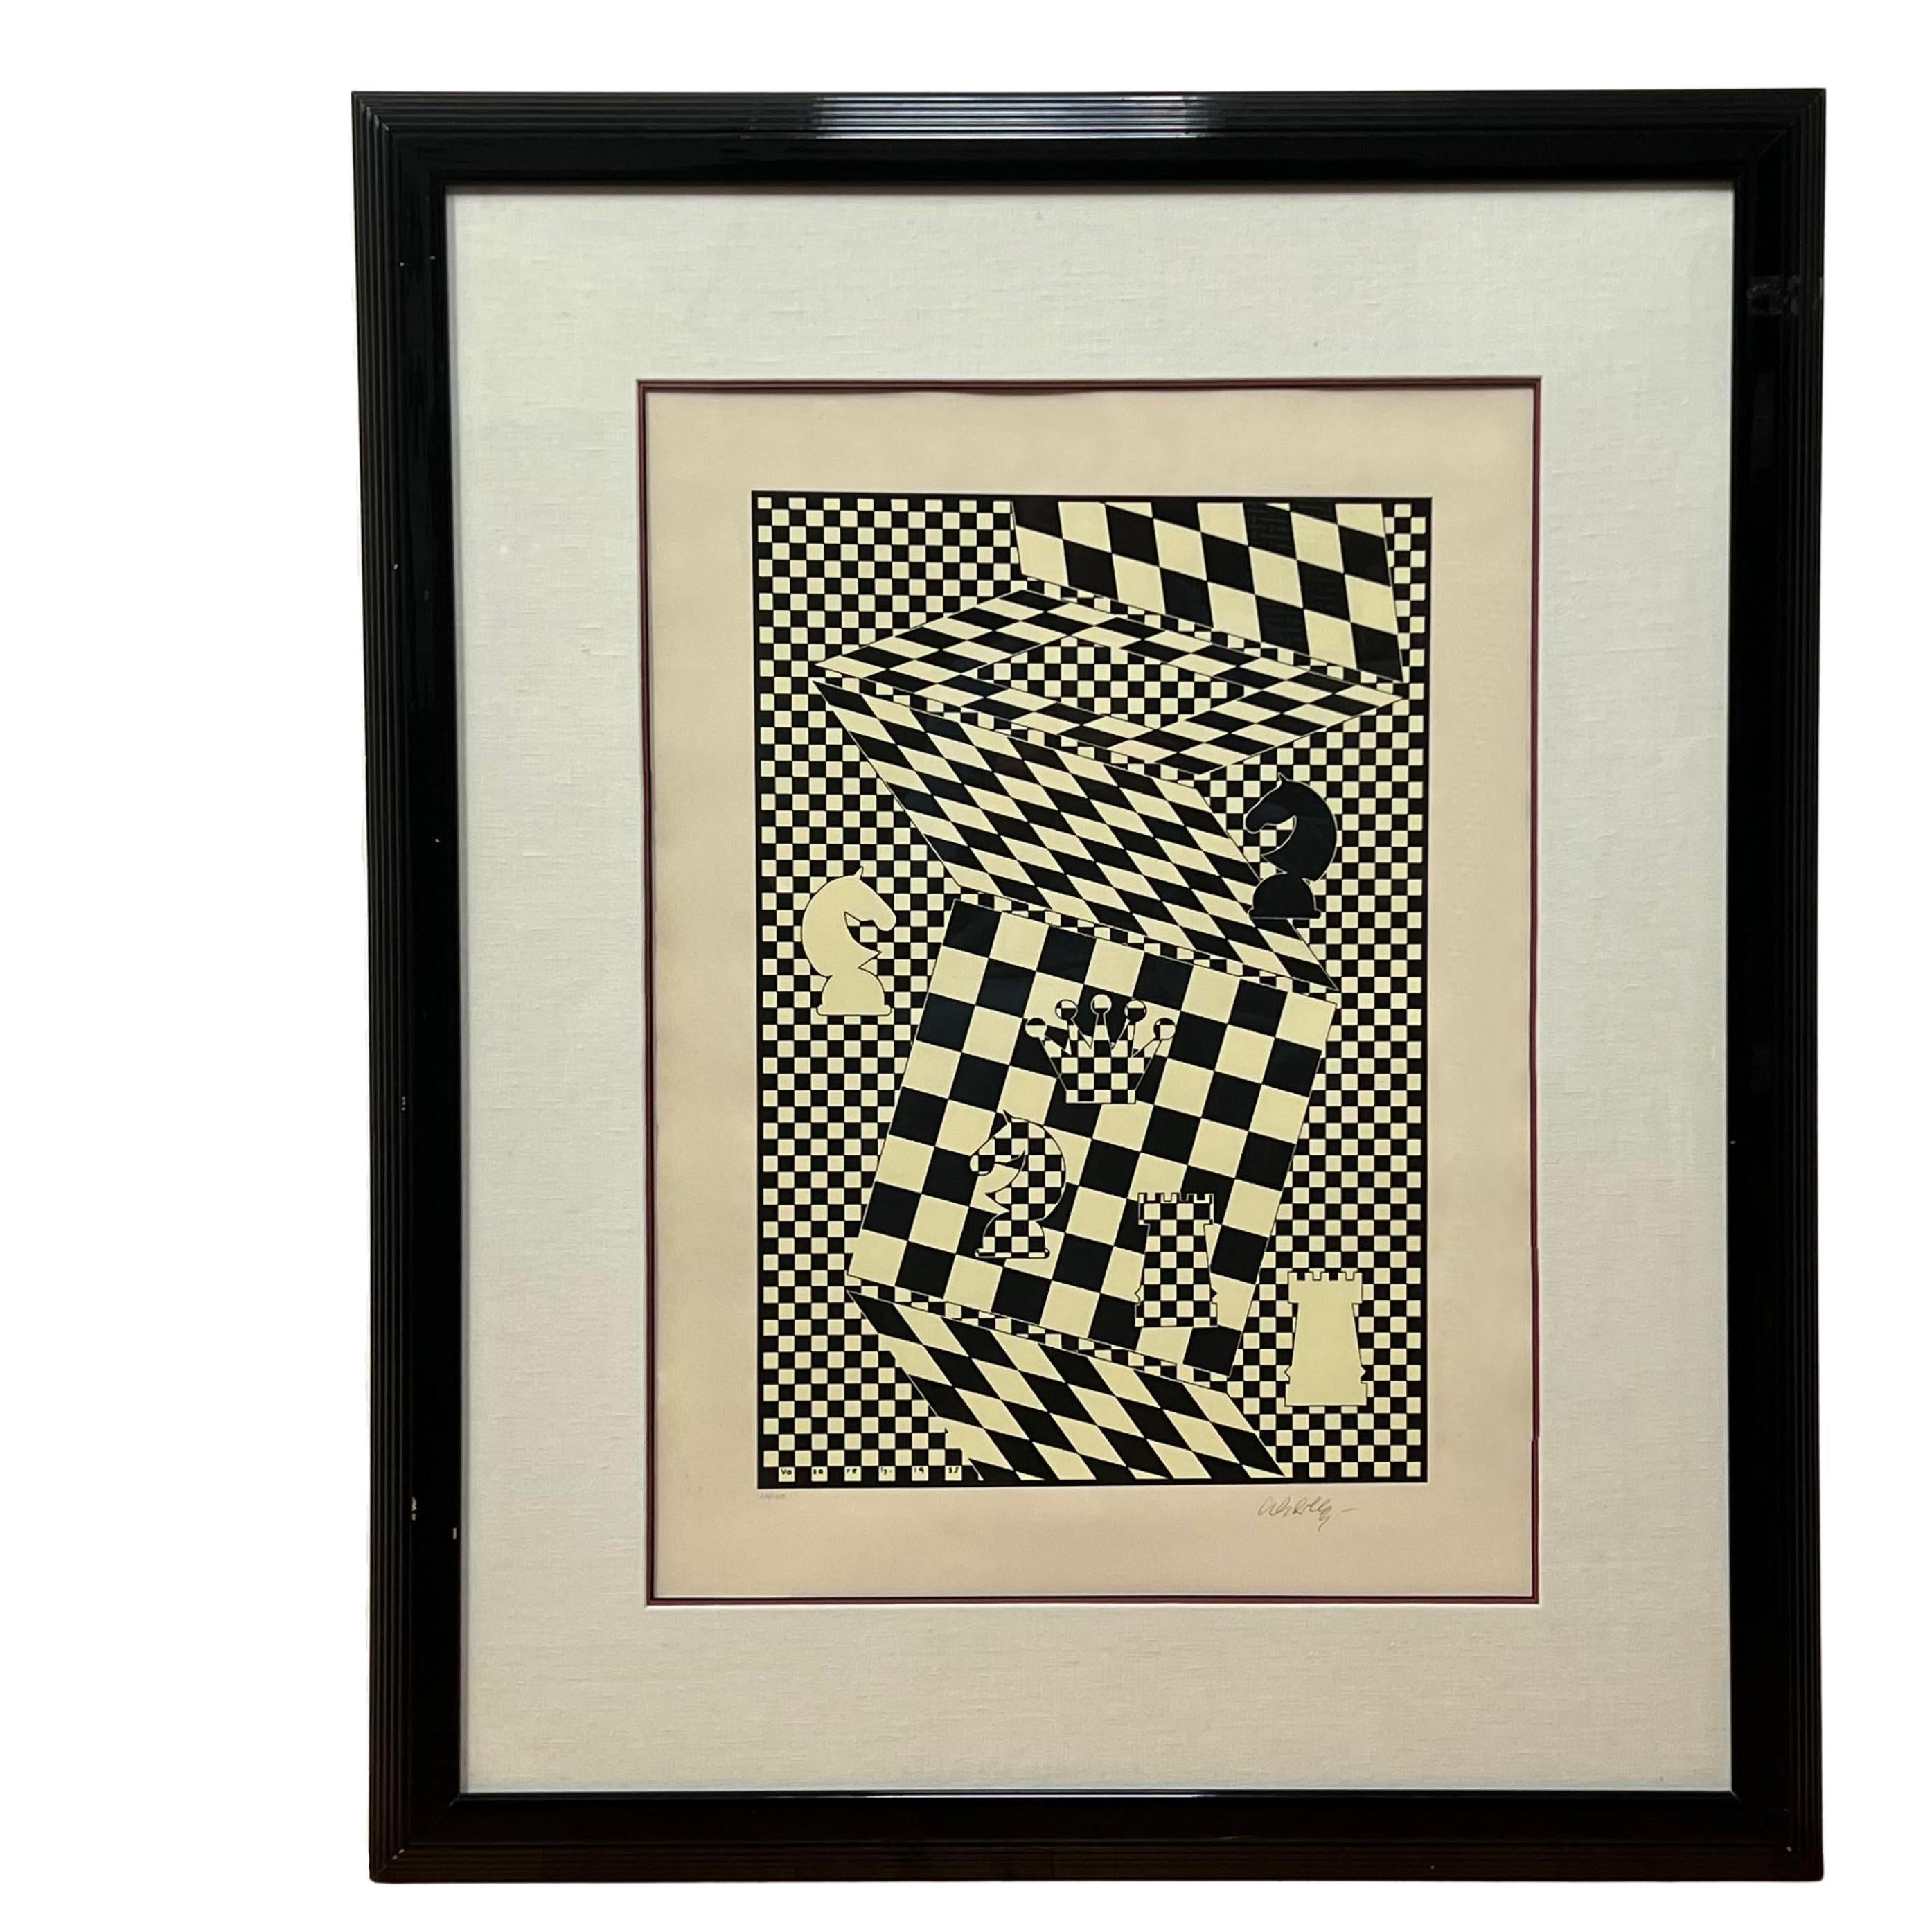 Victor Vasarely, der ungarisch-französische Künstler und Pionier der Op-Art-Bewegung, ist dafür bekannt, dass er geometrische Abstraktionen und optische Täuschungen in seine Kunstwerke integriert. Das Schachbrett, eine Originallithografie aus dem